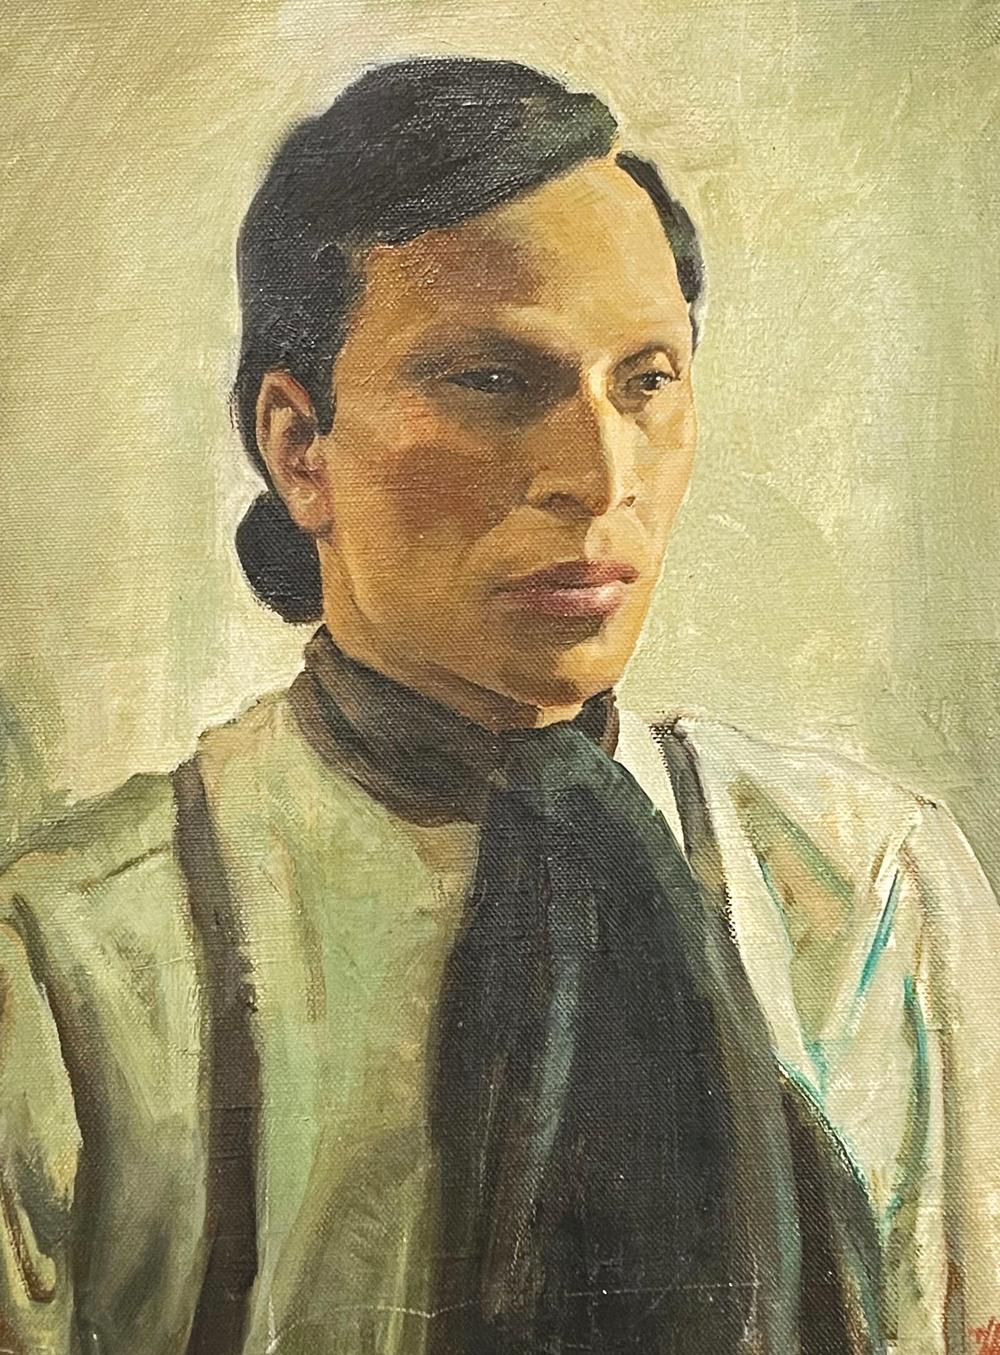 Dieses starke und würdevolle Porträt des großen Cherokee-Führers Junaluska, das von einem der führenden amerikanischen Illustratoren lange nach dem Tod des Indianers gemalt wurde, verwendet eine Farbpalette aus Schwarz und Moosgrün, um sein Thema zu